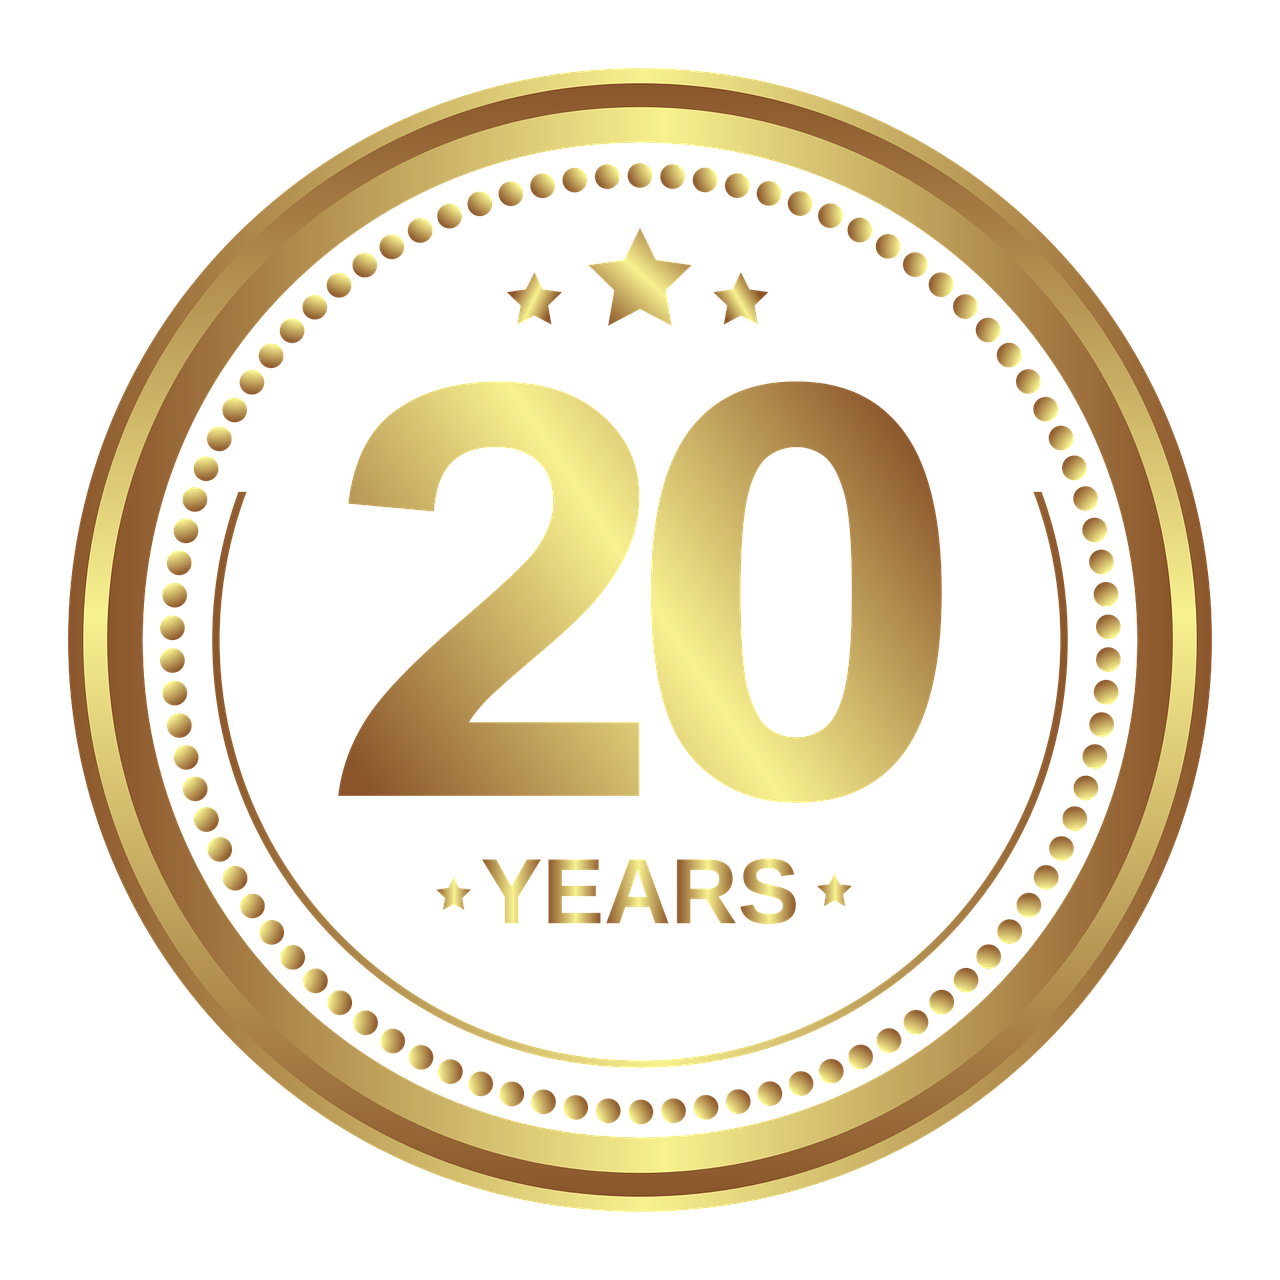 Logo showing 20-year guarantee